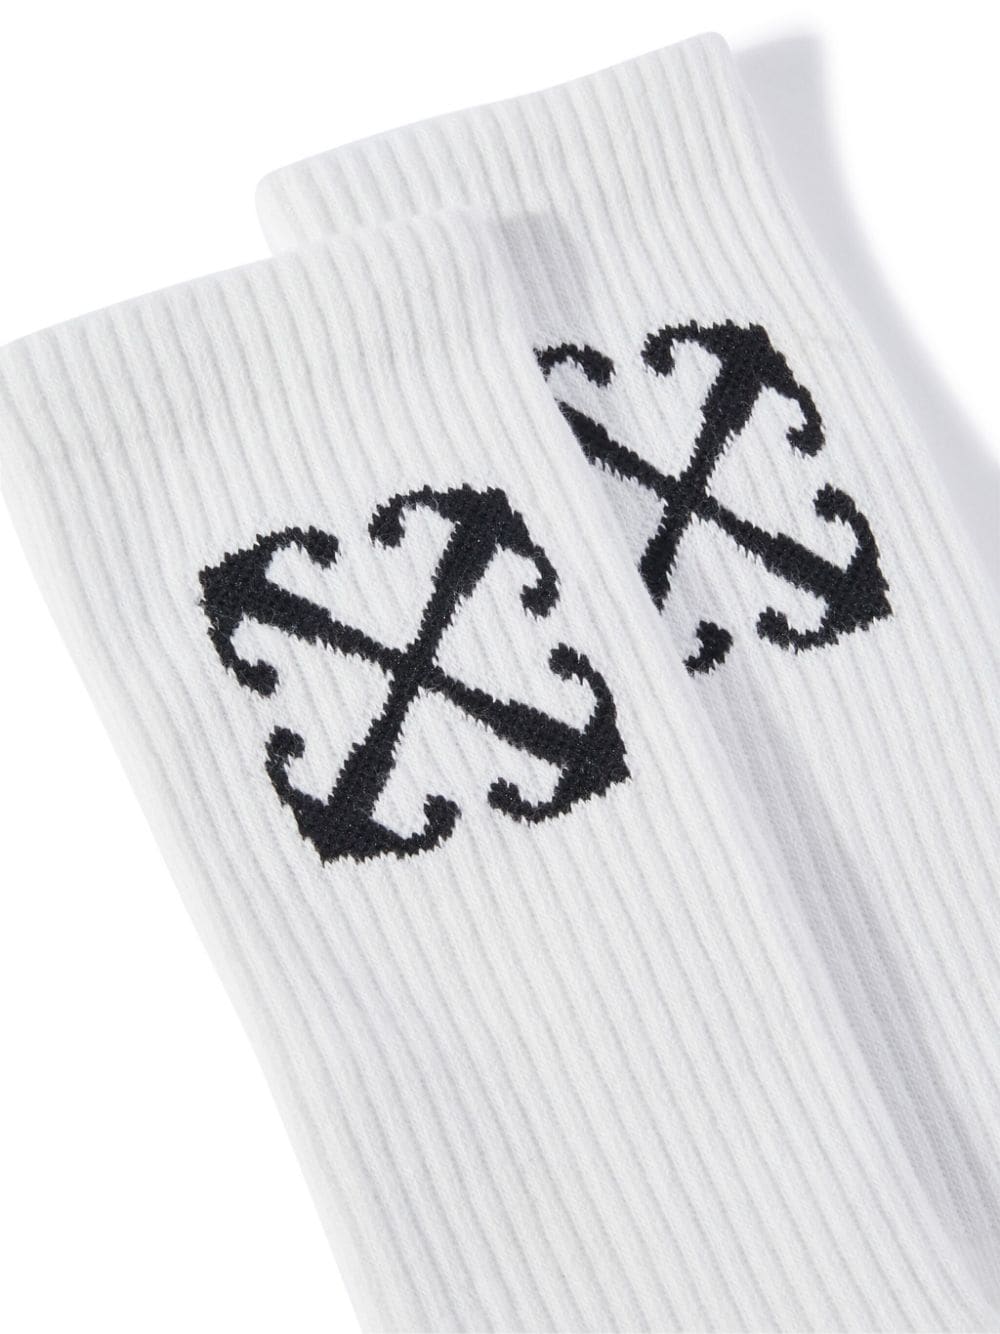 White socks for children with black logo